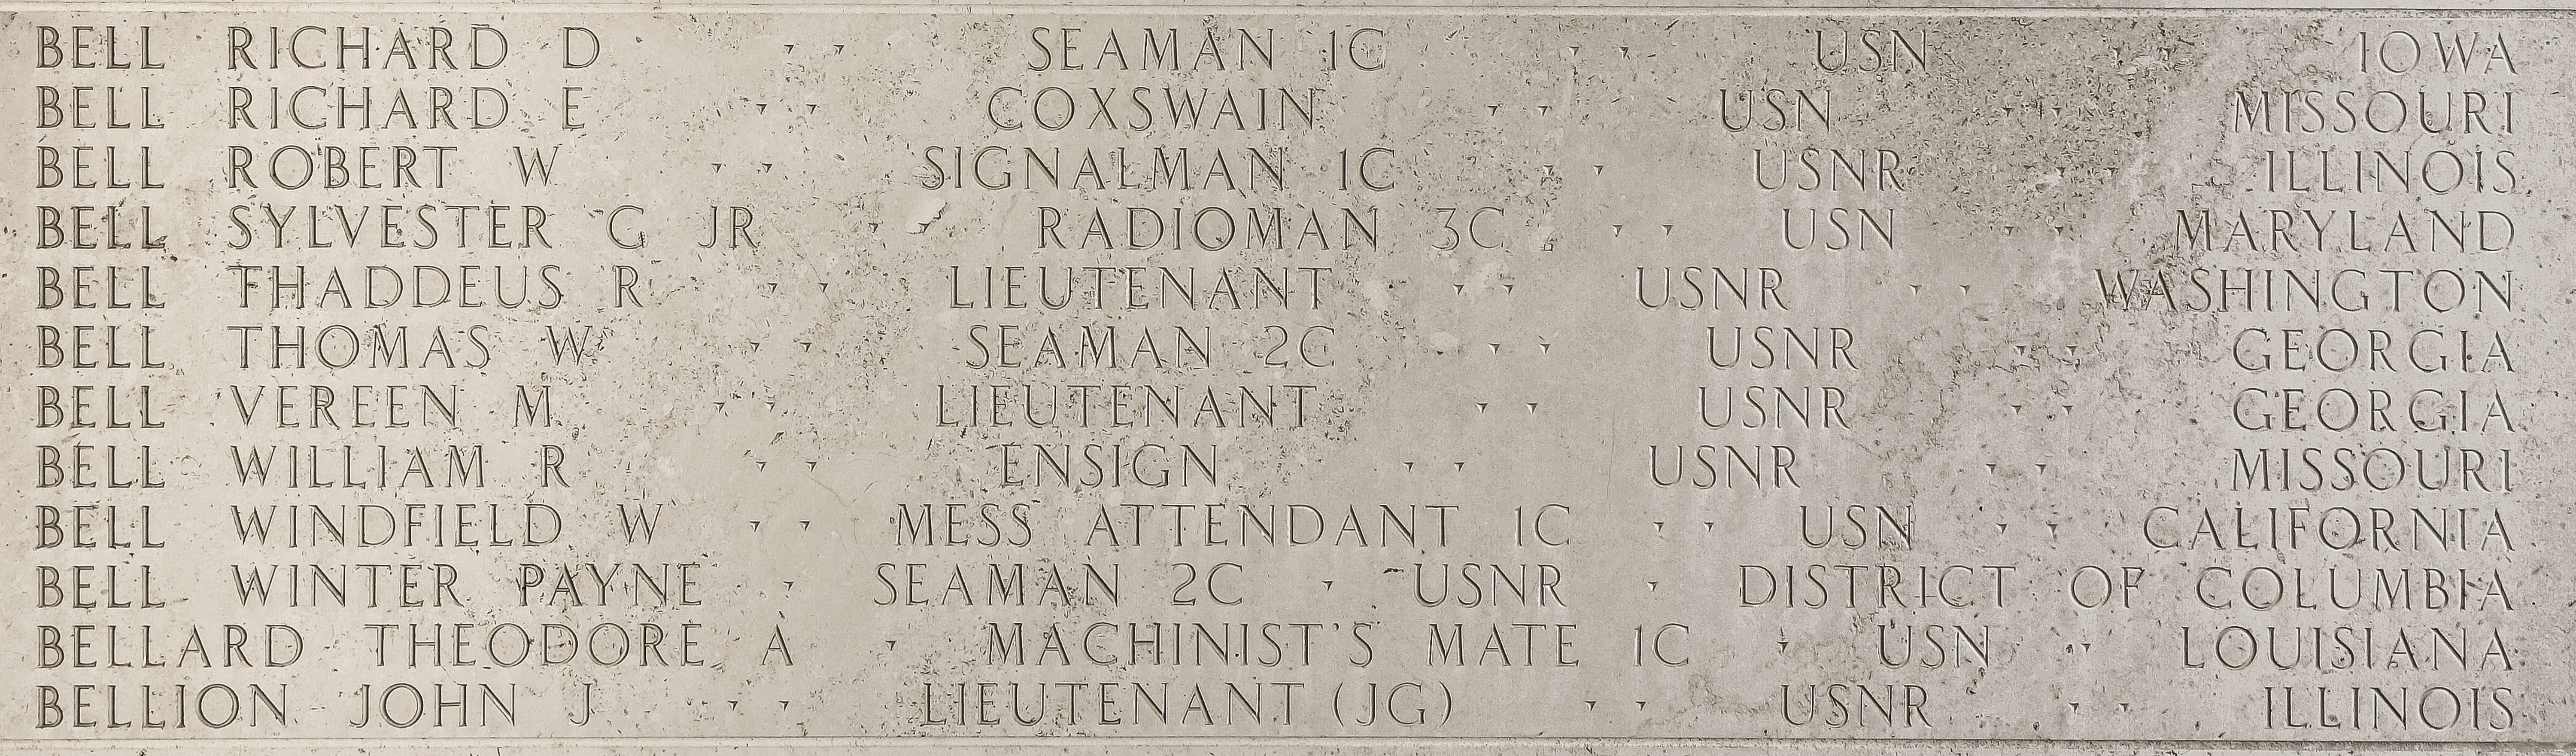 Robert W. Bell, Signalman First Class